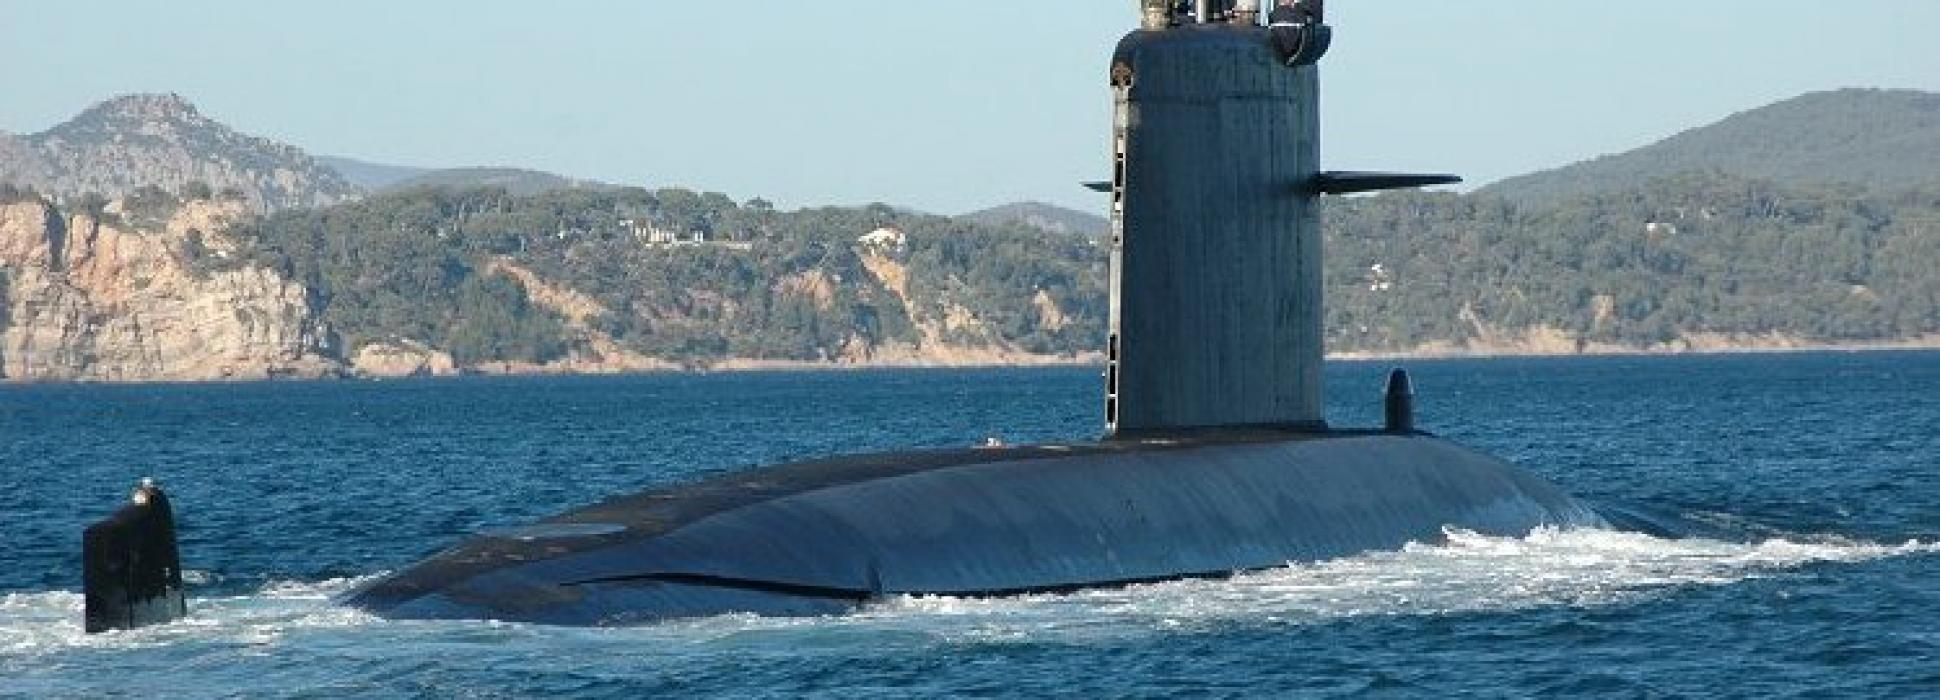 Le Saphir,  sous-marin nucléaire français, sera démantelé à Cherbourg